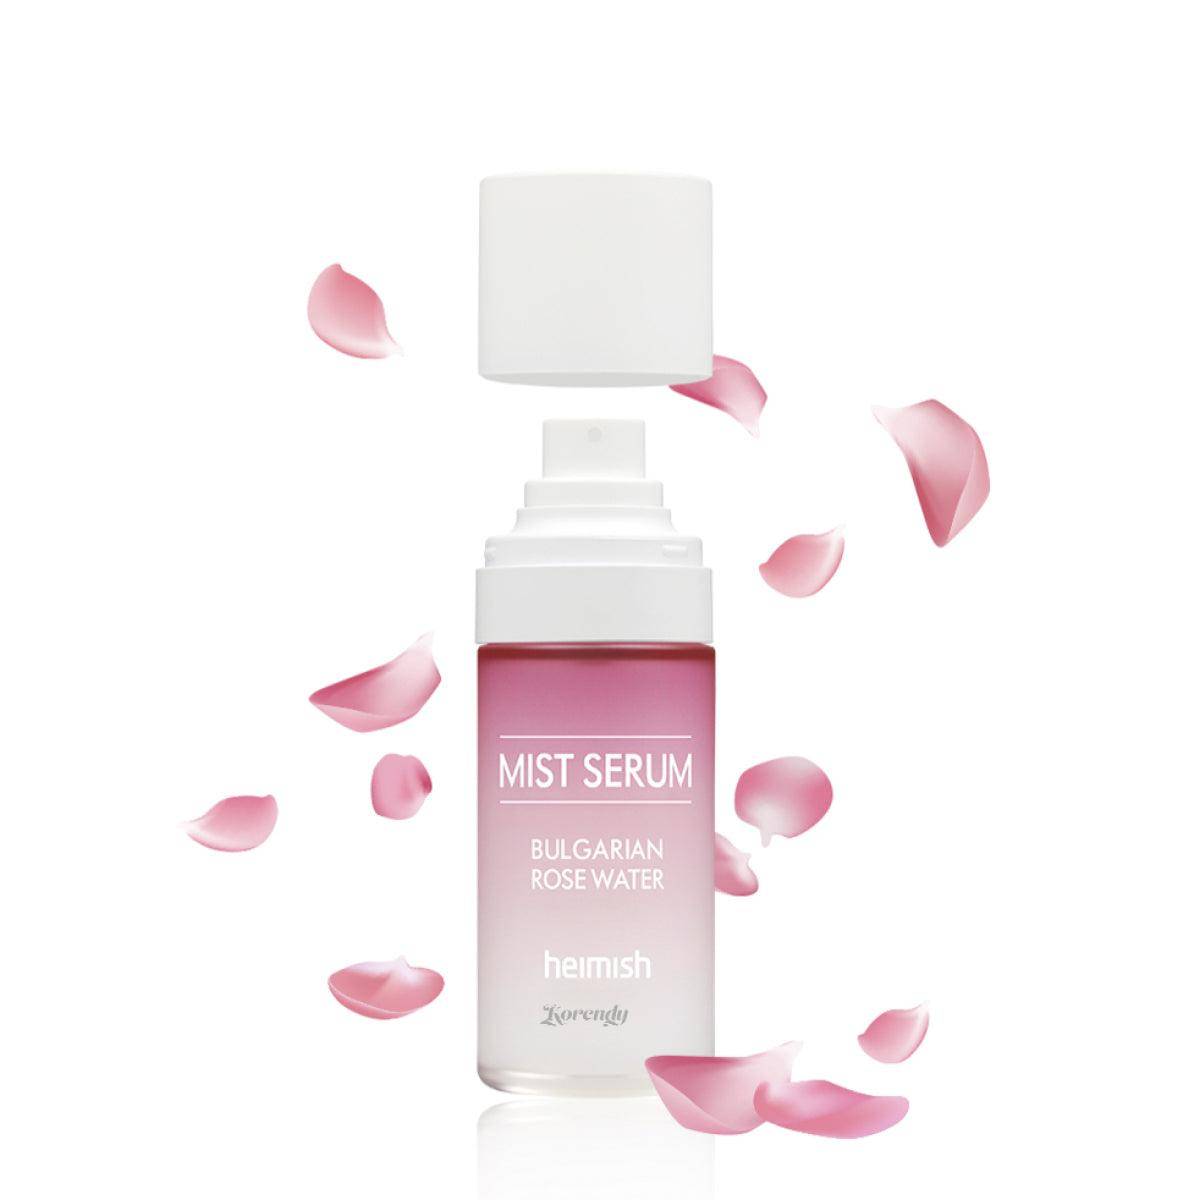 Heimish - Bulgarian Rose Mist Serum 55ml Mist Korendy Türkiye Turkey Kore Kozmetik Kbeauty Cilt Bakım 